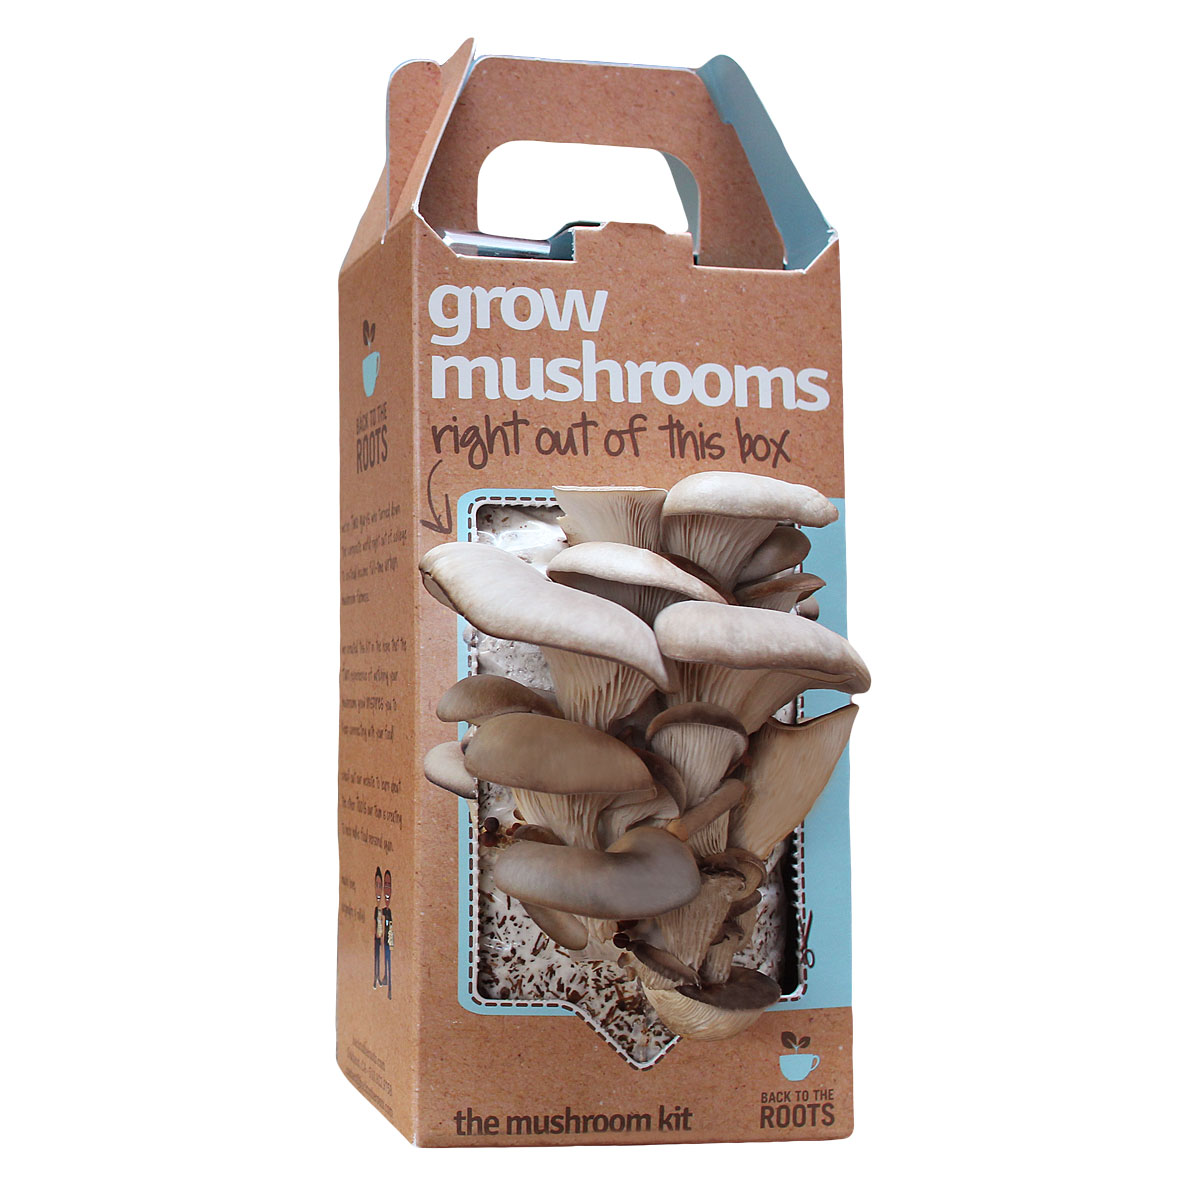 Kit Cogumelos - Uma excelente indicação ao amigo ecohipster. Em vez de plantas, coisa tão popular e banal, dê a ele essa caixa de fungos. Com o tempo florescem belos cogumelos que podem ser ingeridos depois. Talvez não faça bem algum ao meio ambiente, mas ao menos serve para o jantar.